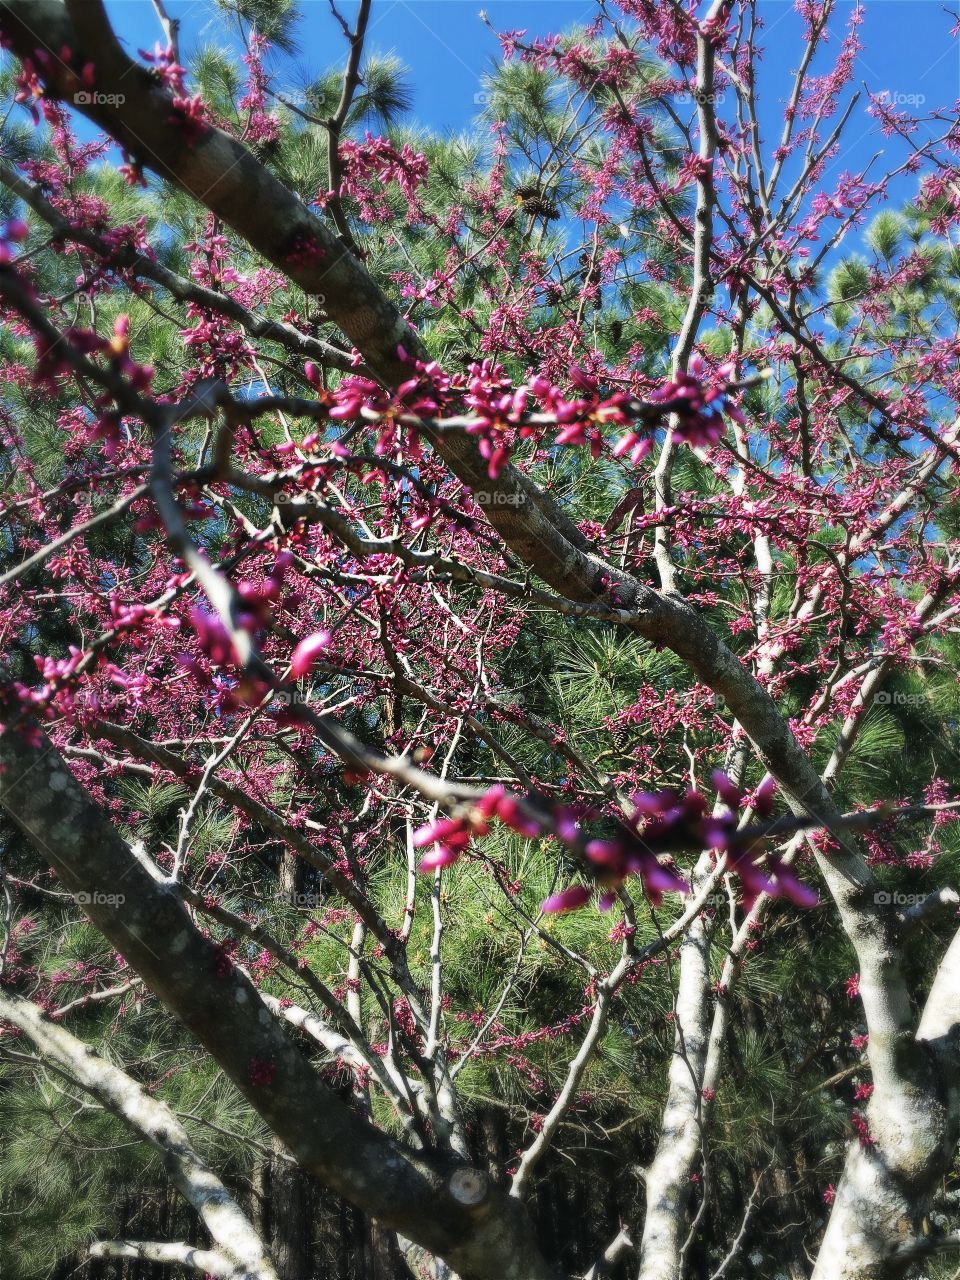 Redbud blossom